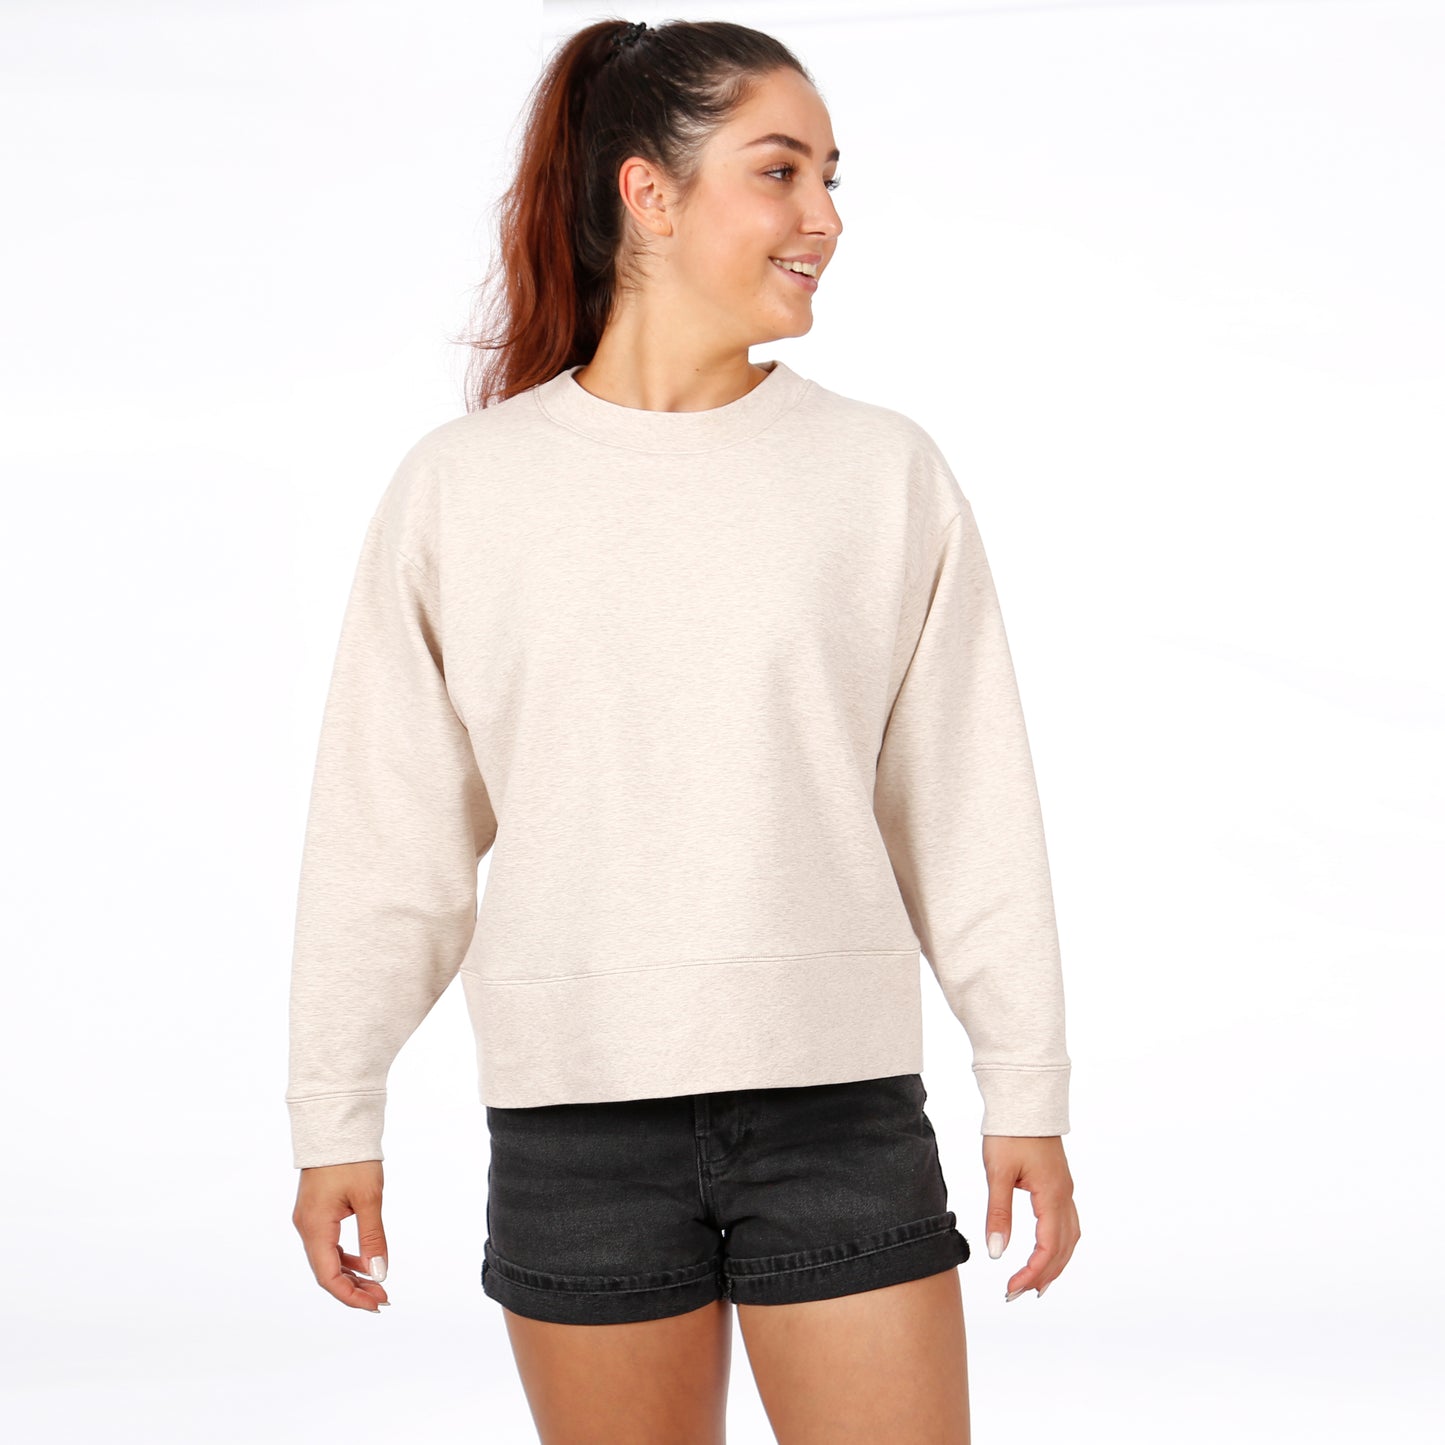 Sweater FRAU ZORA | Papierschnitt